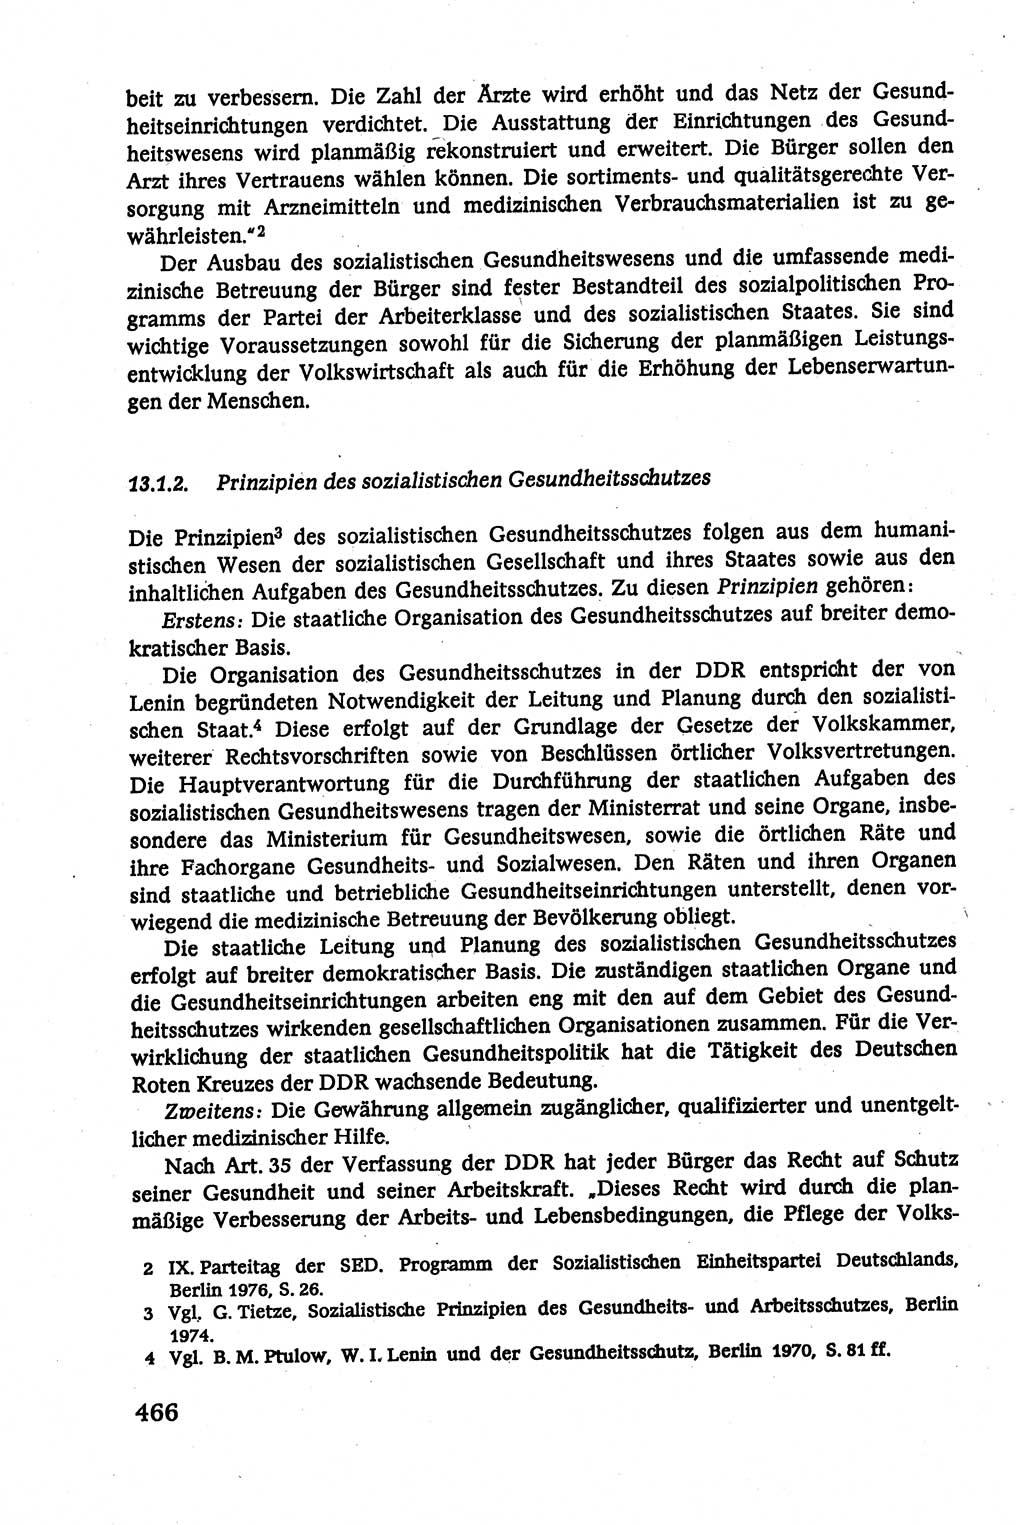 Verwaltungsrecht [Deutsche Demokratische Republik (DDR)], Lehrbuch 1979, Seite 466 (Verw.-R. DDR Lb. 1979, S. 466)